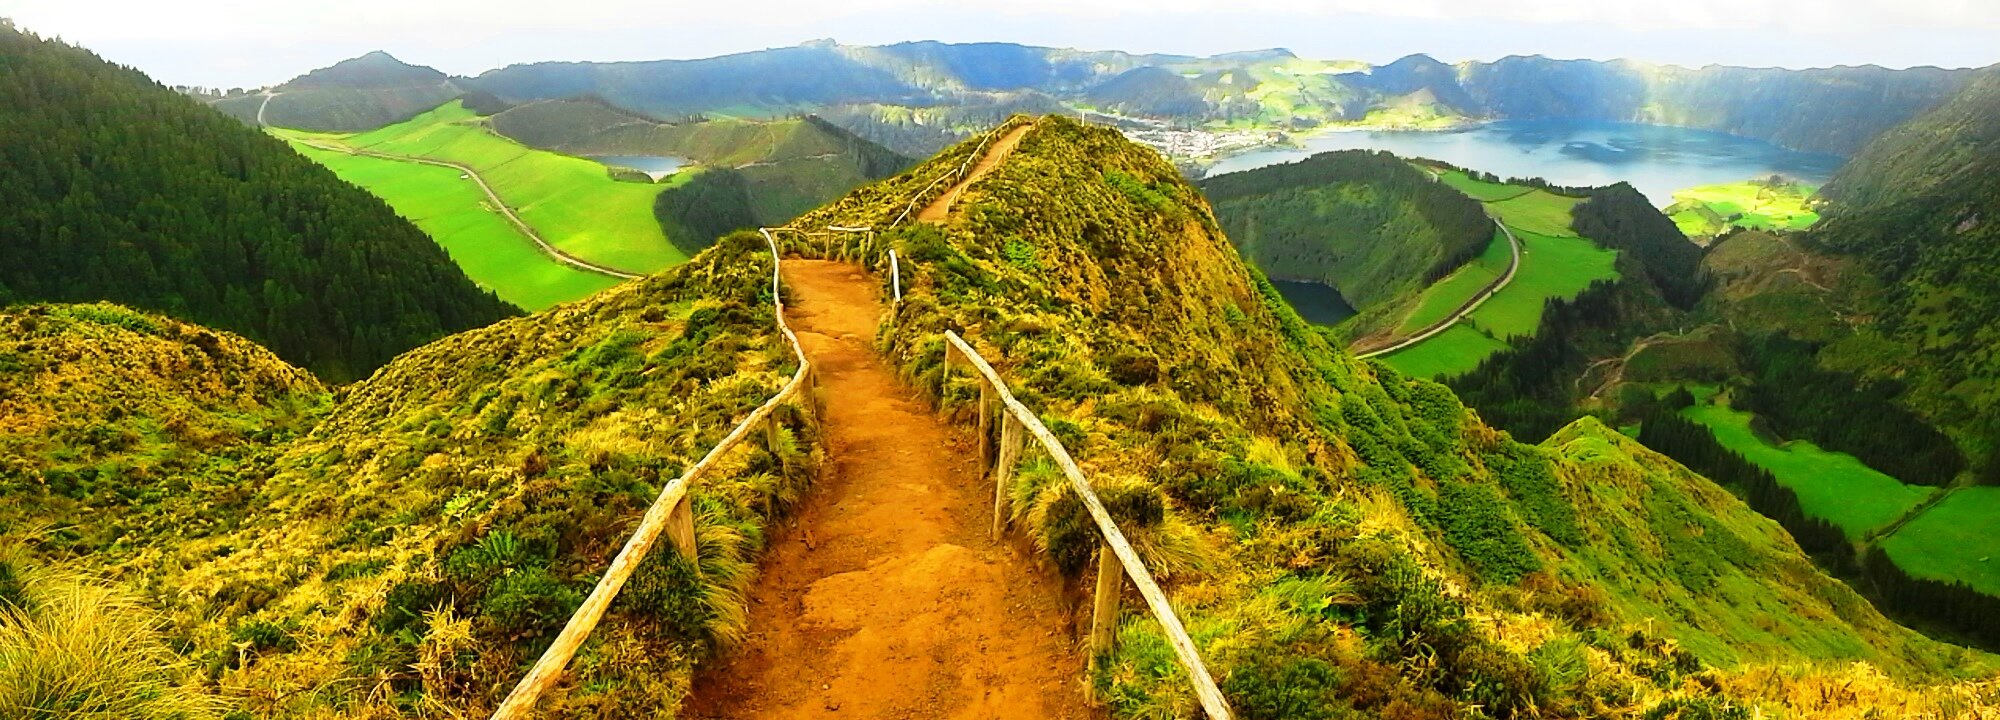 Ponta Delgada, São Miguel, Azores: What to Know Before You Go